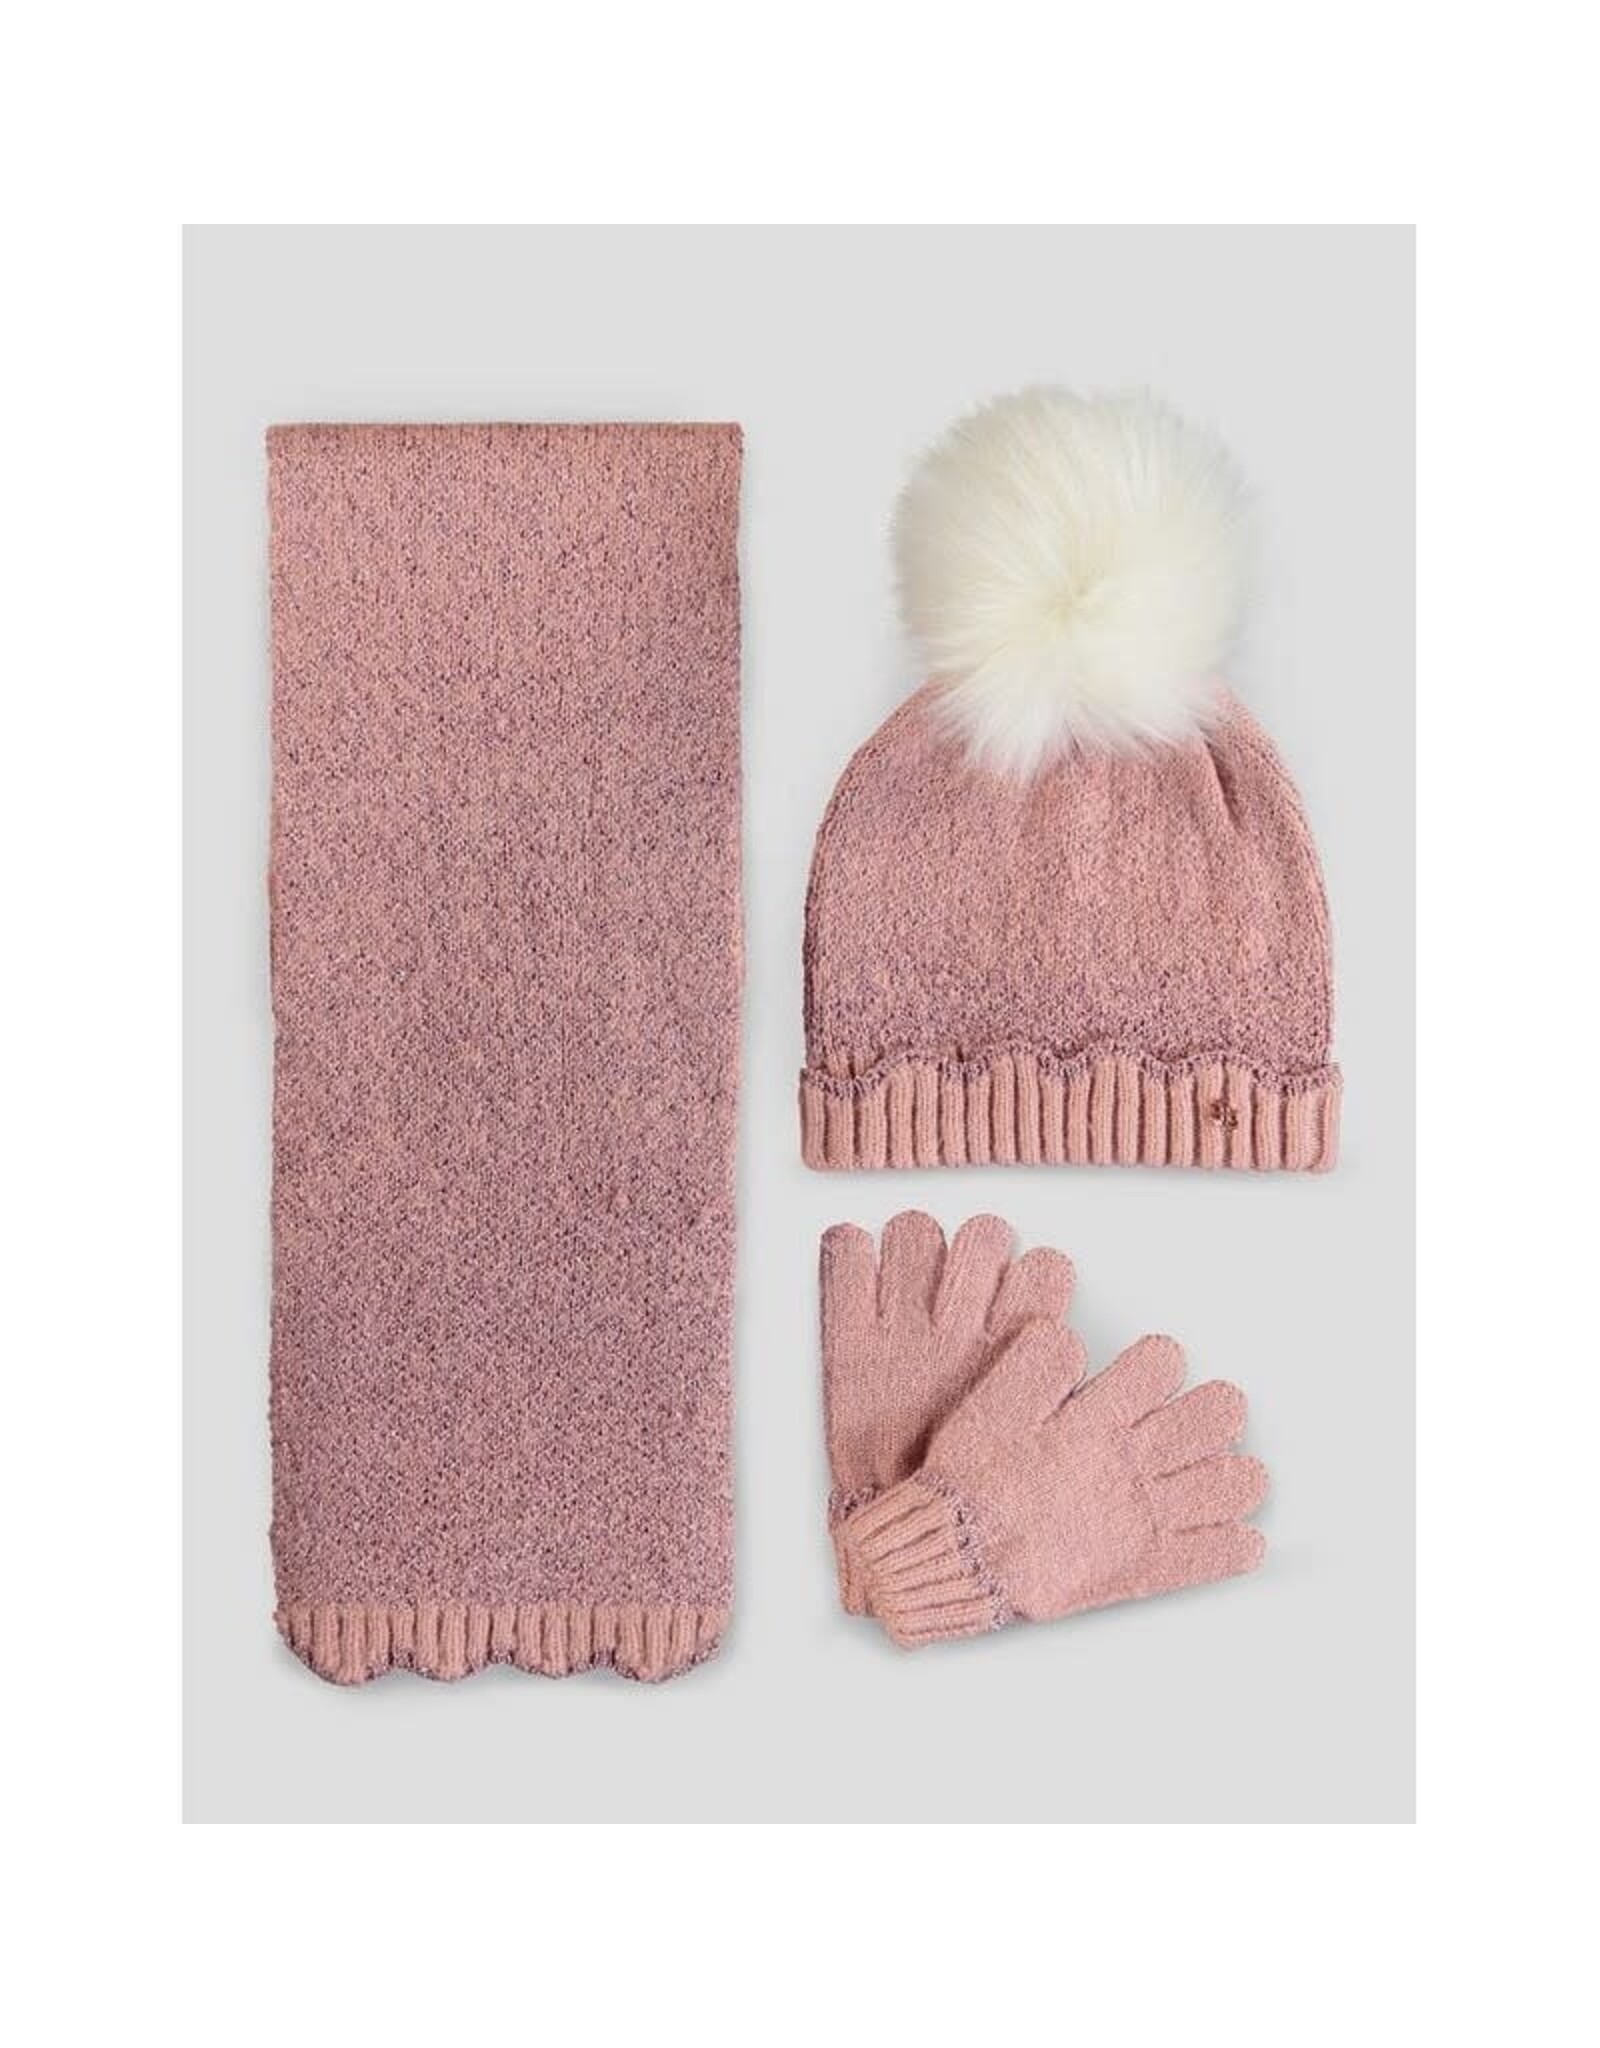 Abel & Lula Shimmer Rosa Hat, Gloves and Scarf Set